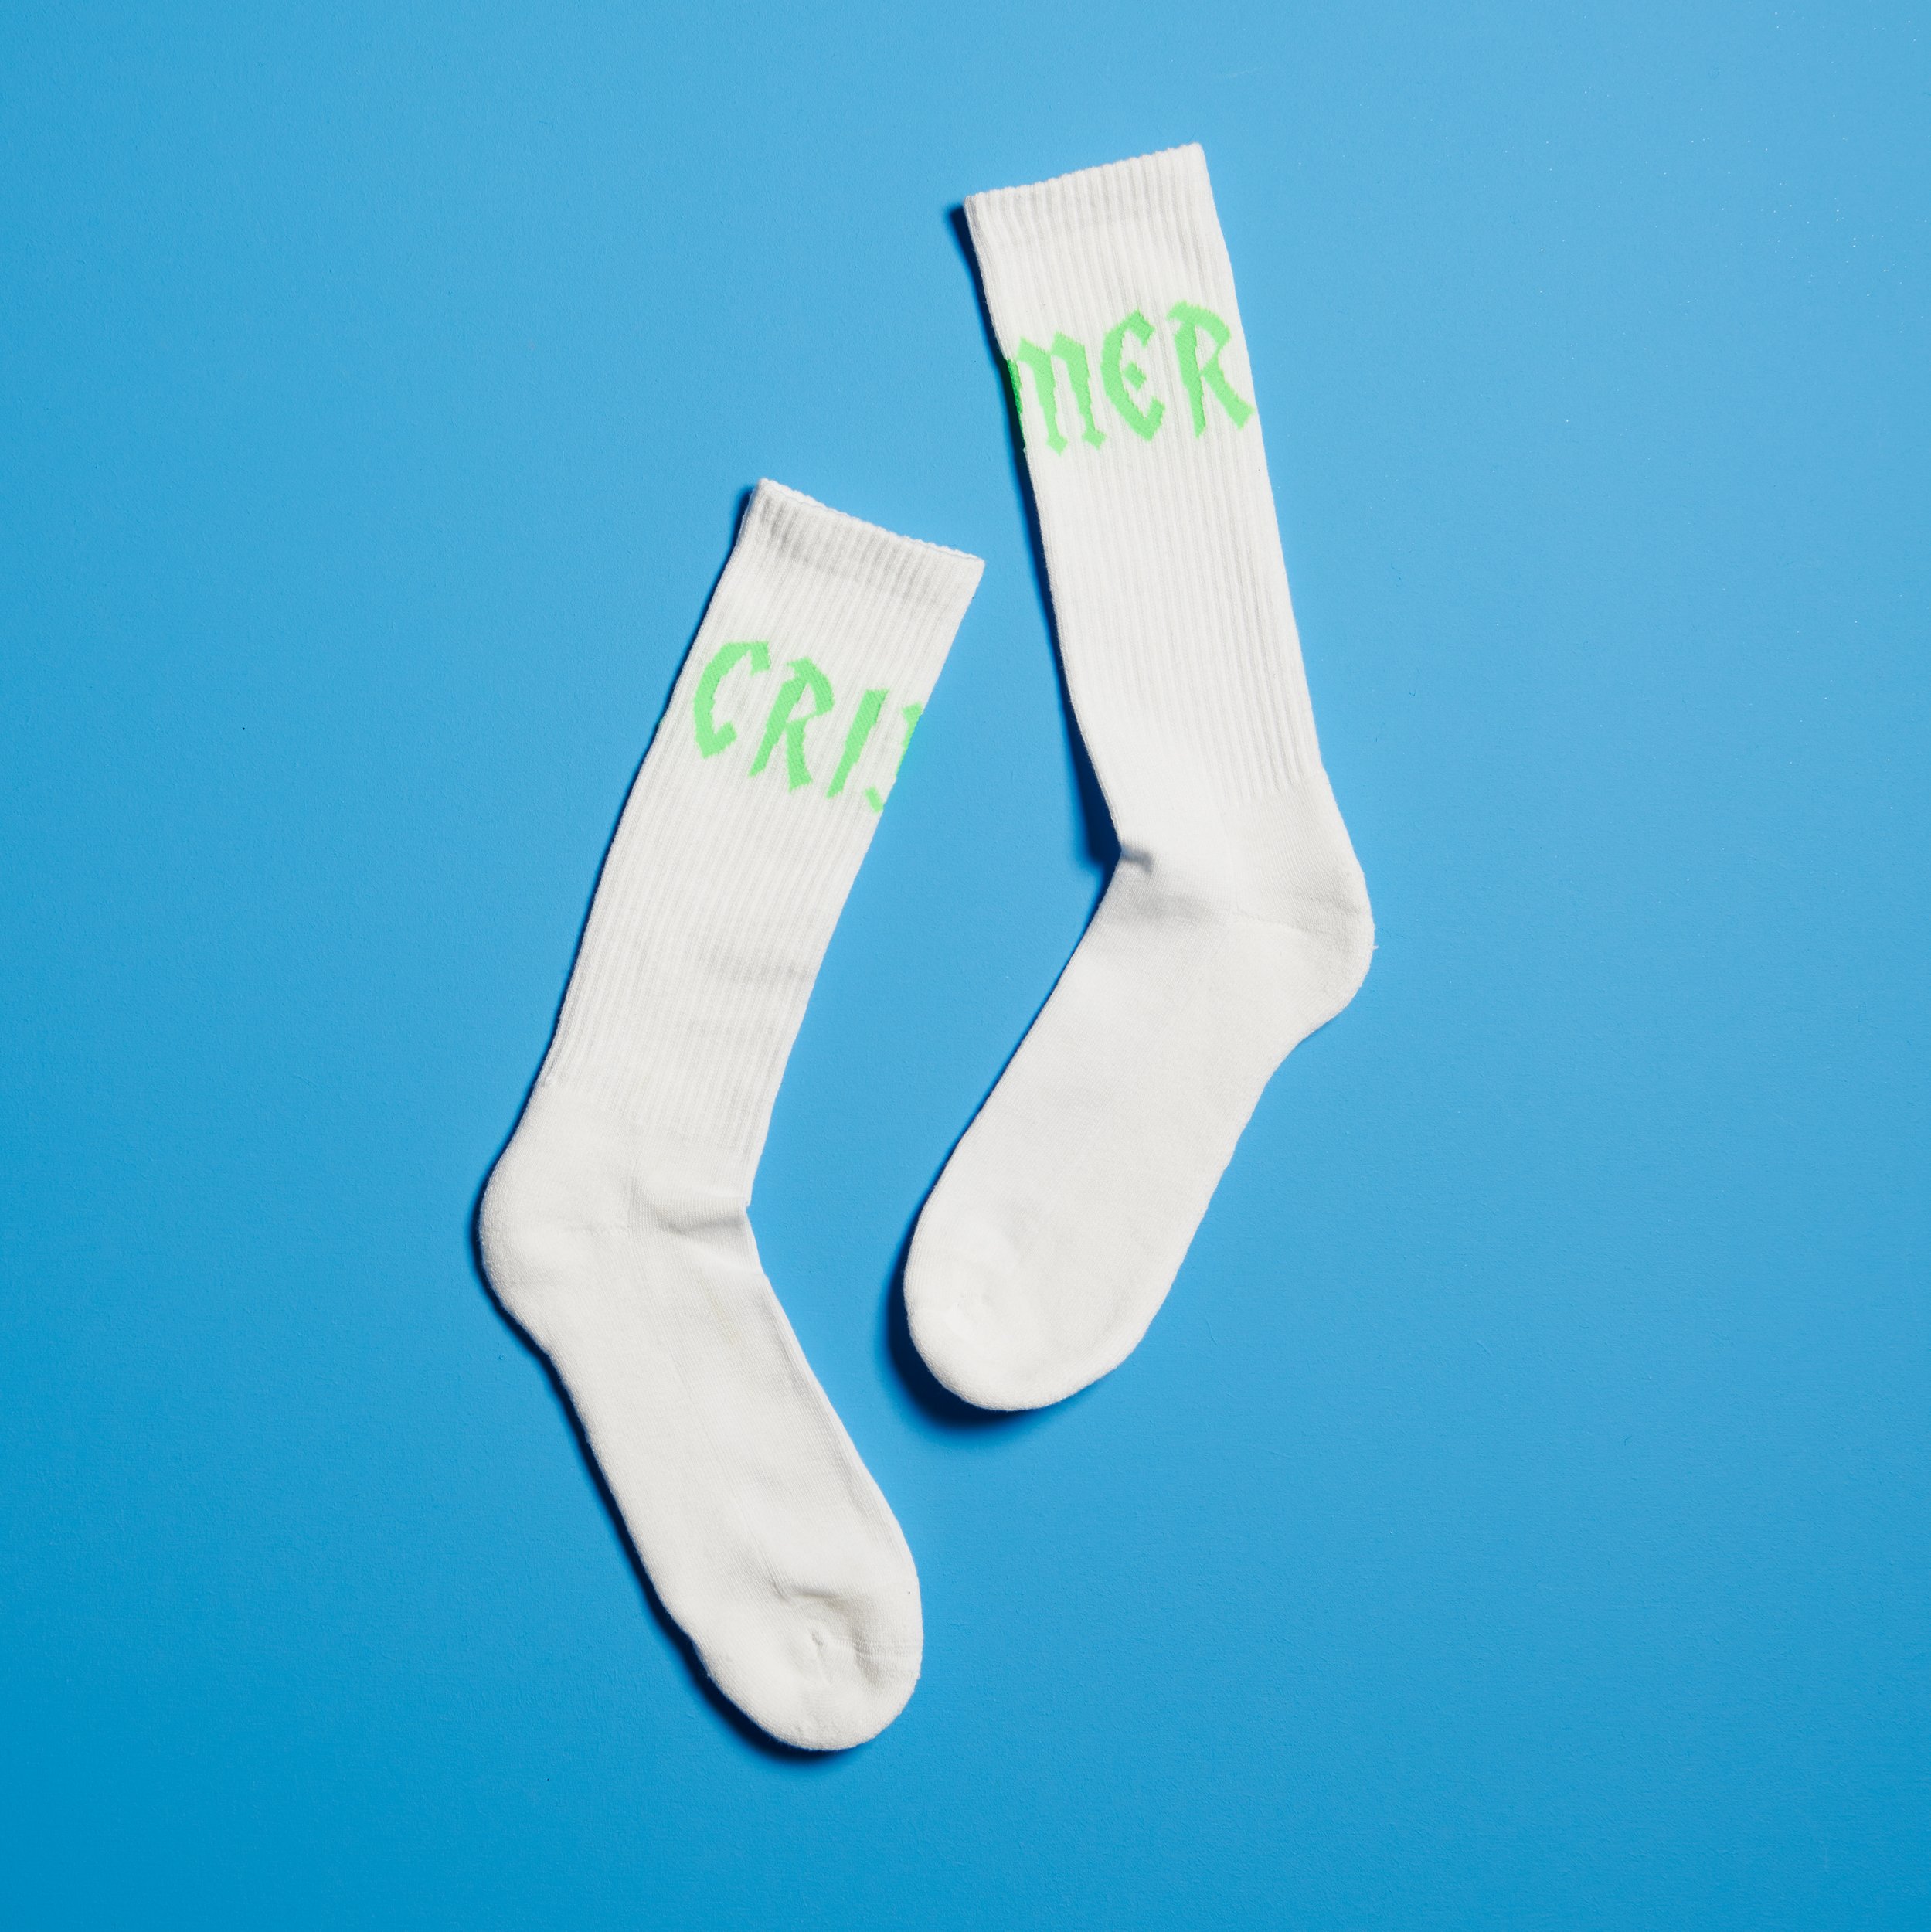 CRIMER Socks White/Neon